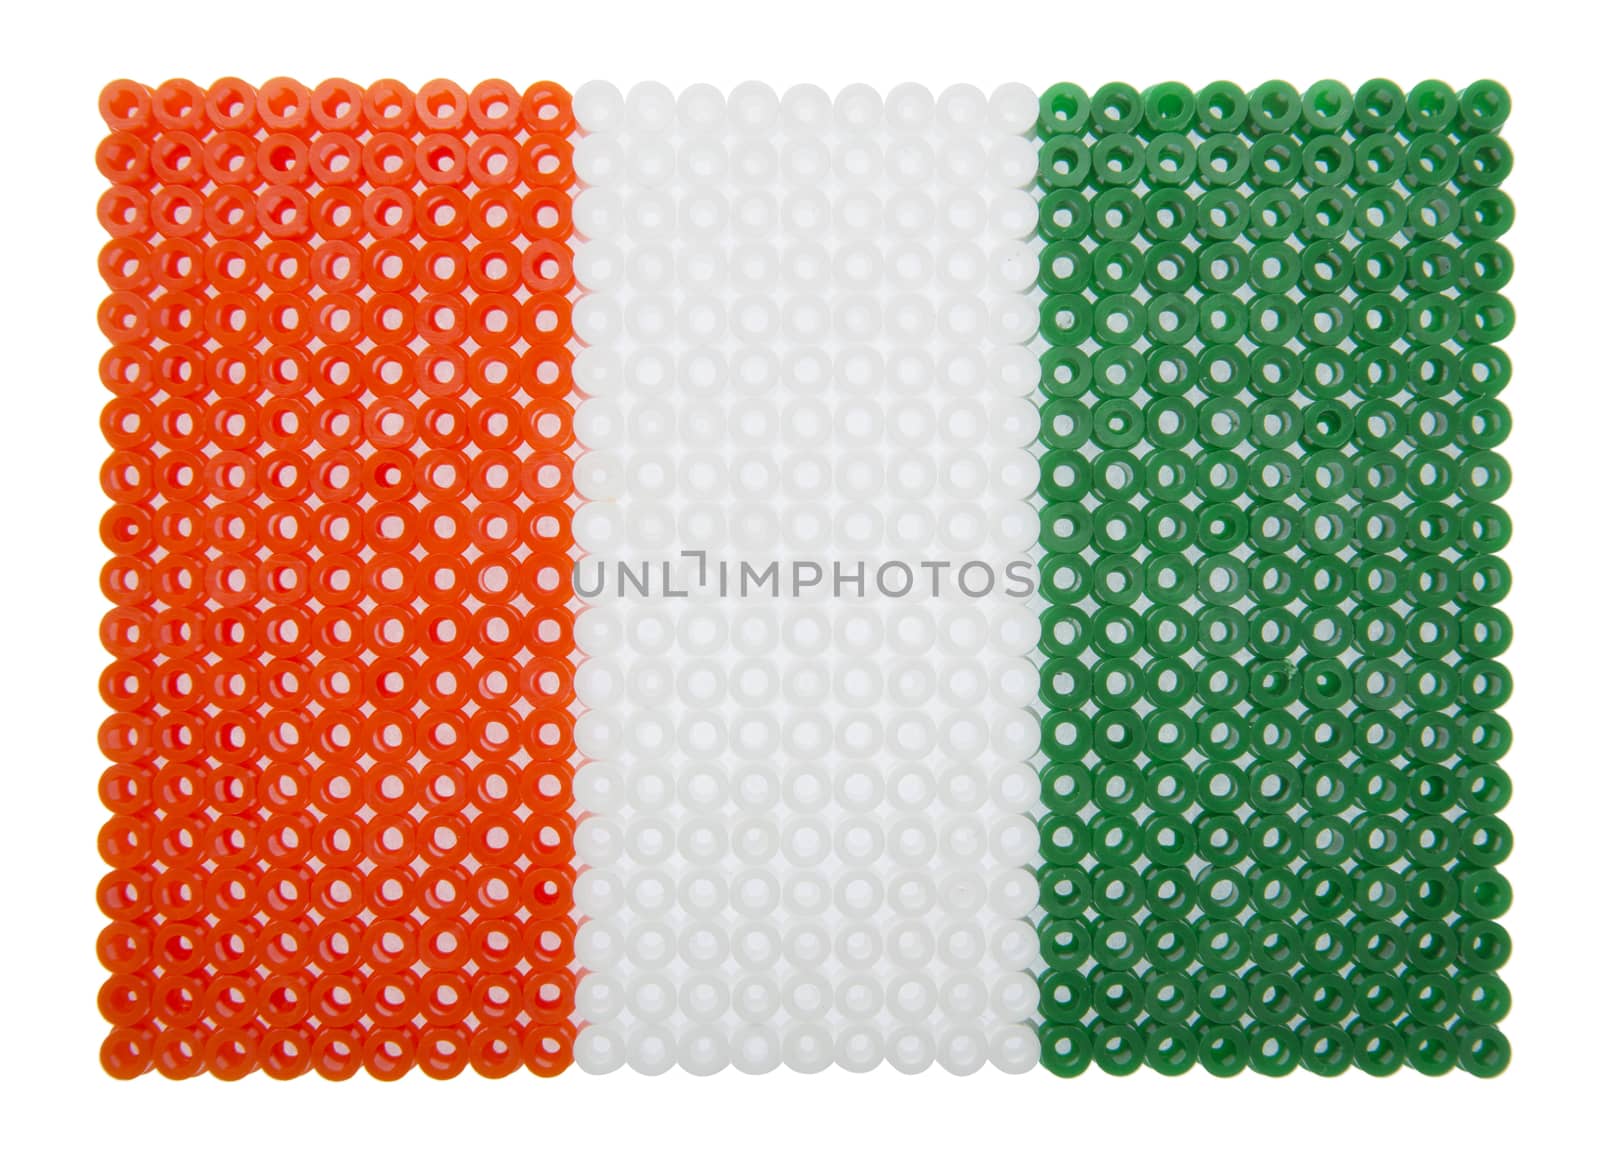 Ivorey Coast Flag made of plastic pearls